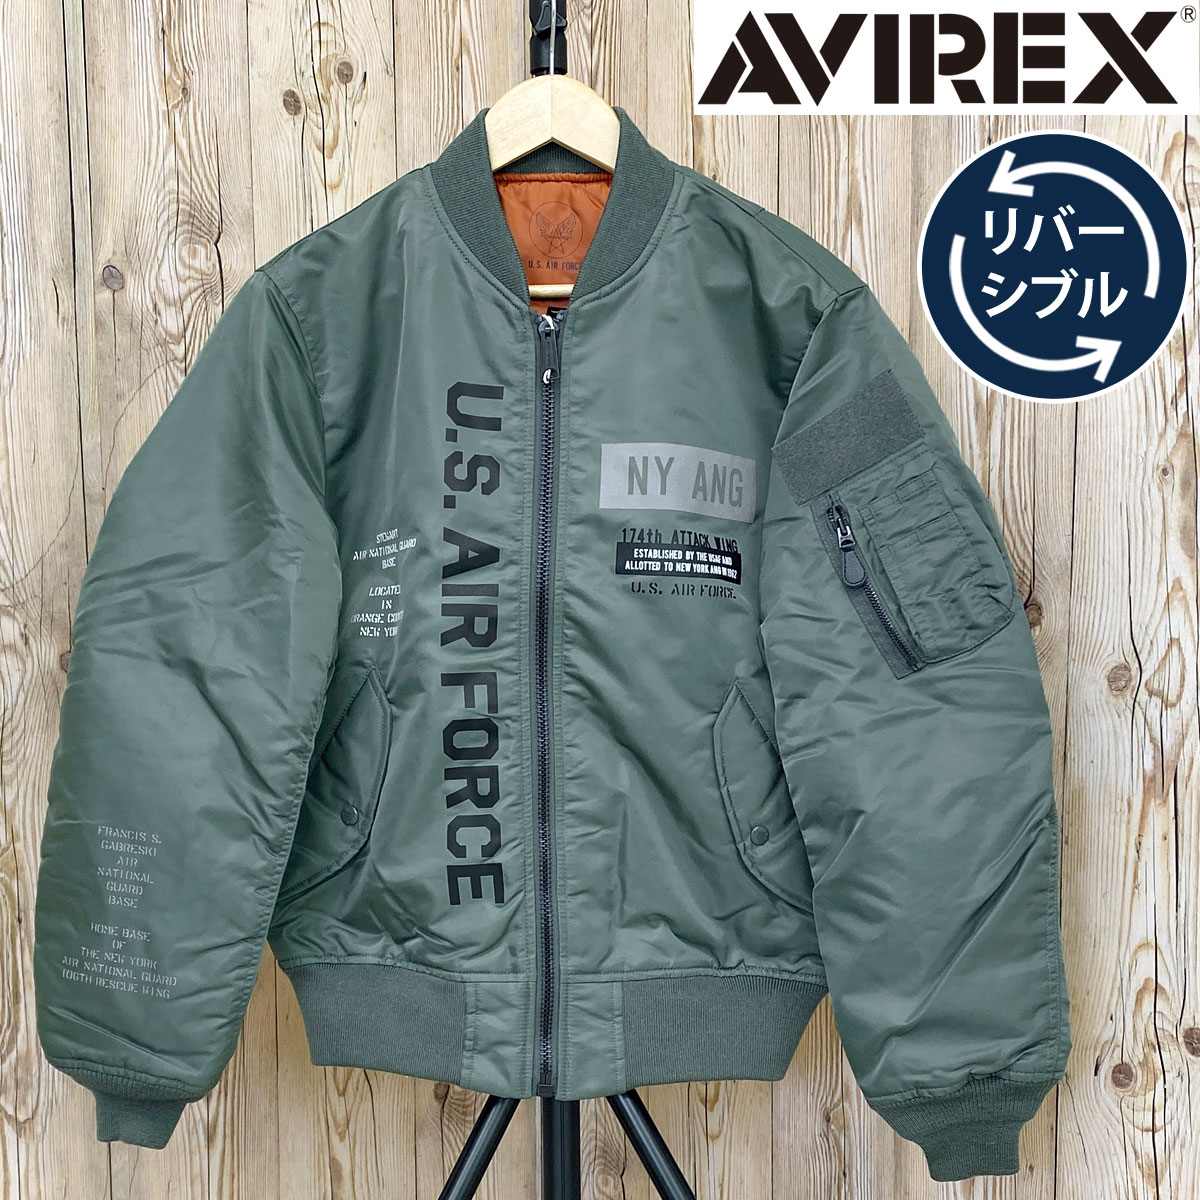 AVIREX アヴィレックス MA1 -REFLECT STENCIL-リバーシブル ジャケット ミリタリー フライト ジャケット アウター ブルゾン  メンズ ブランド アビレックス